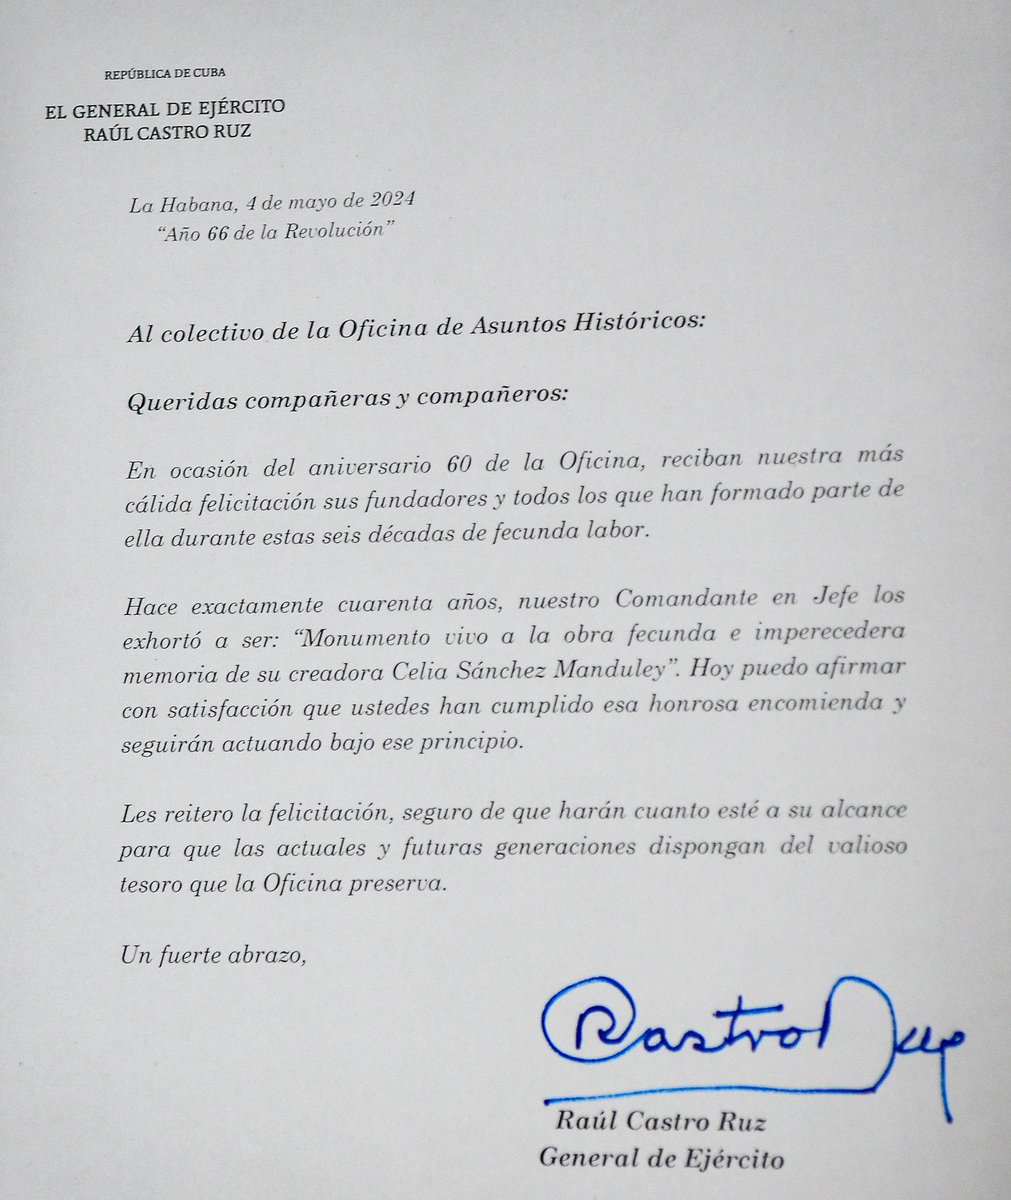 Una carta de felicitación del General de Ejército Raúl Castro Ruz distinguió la celebración por las seis décadas de la Oficina de Asuntos Históricos, fundada por la inolvidable Celia Sánchez Manduley. #CubaViveEnSuHistoria